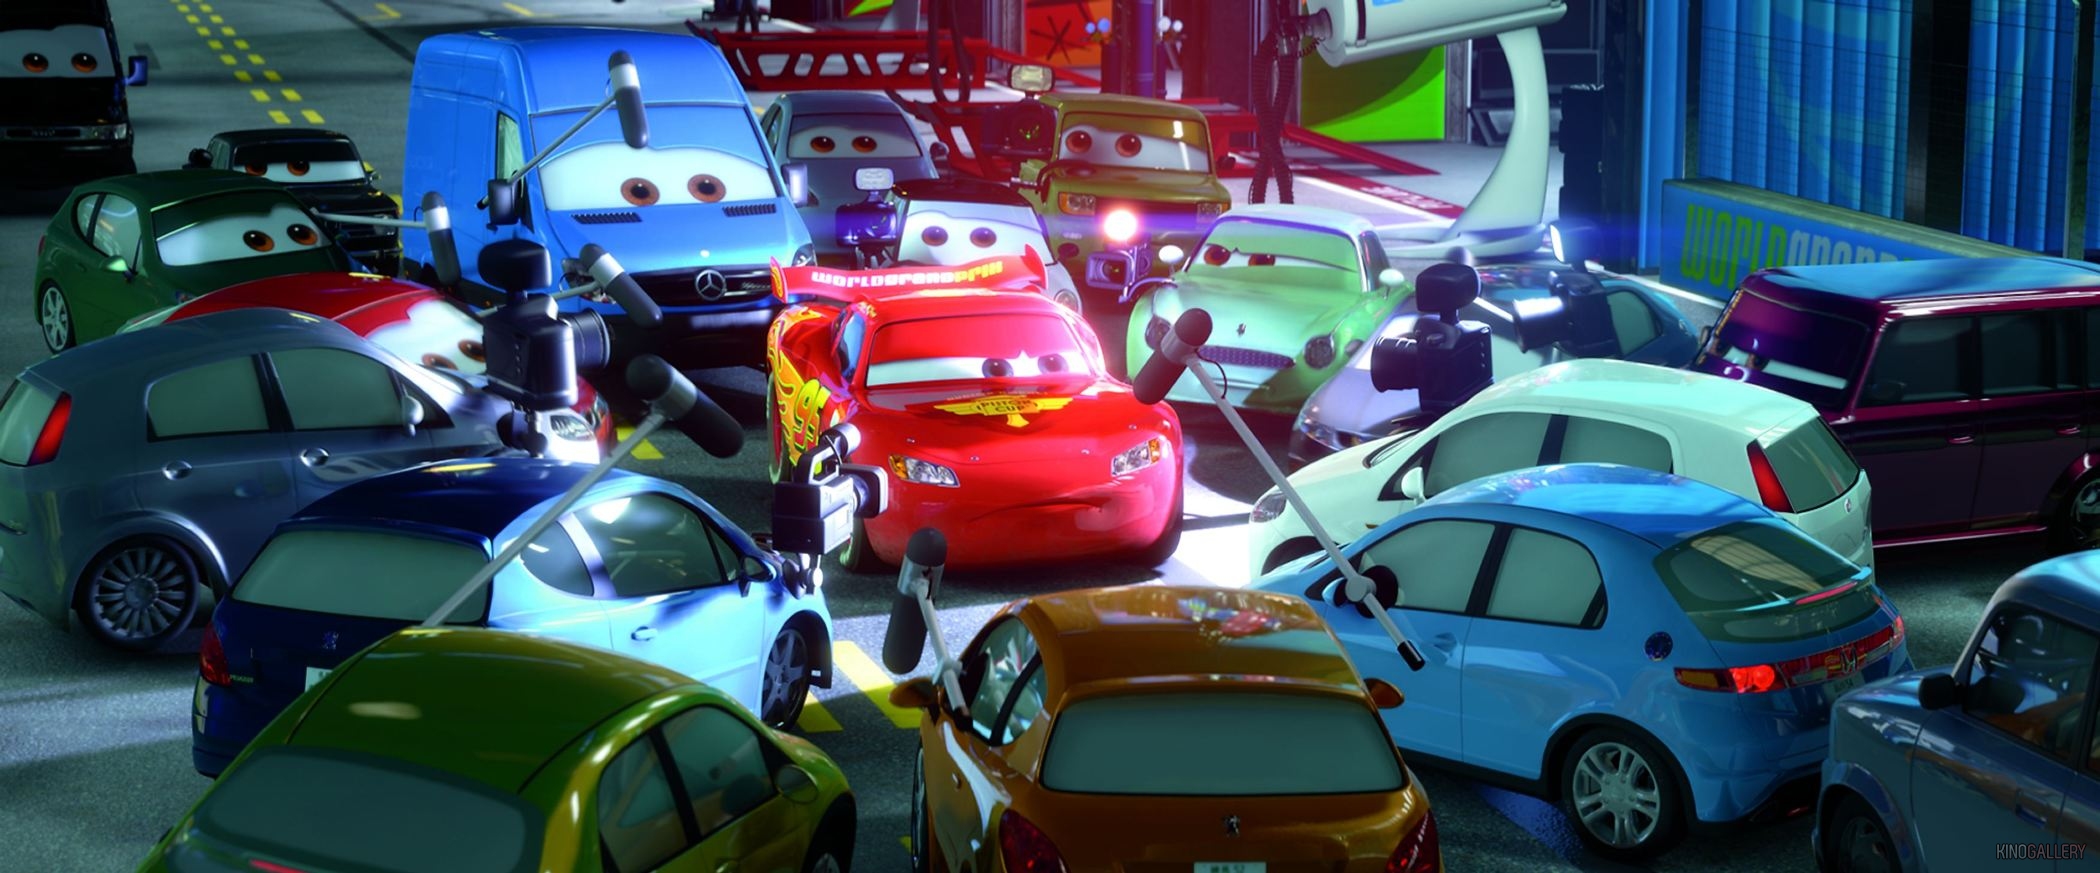 International, disney pixar cars animation film: Film Cars 3 Tengah Diproses, Siap Tayang Juni 2017